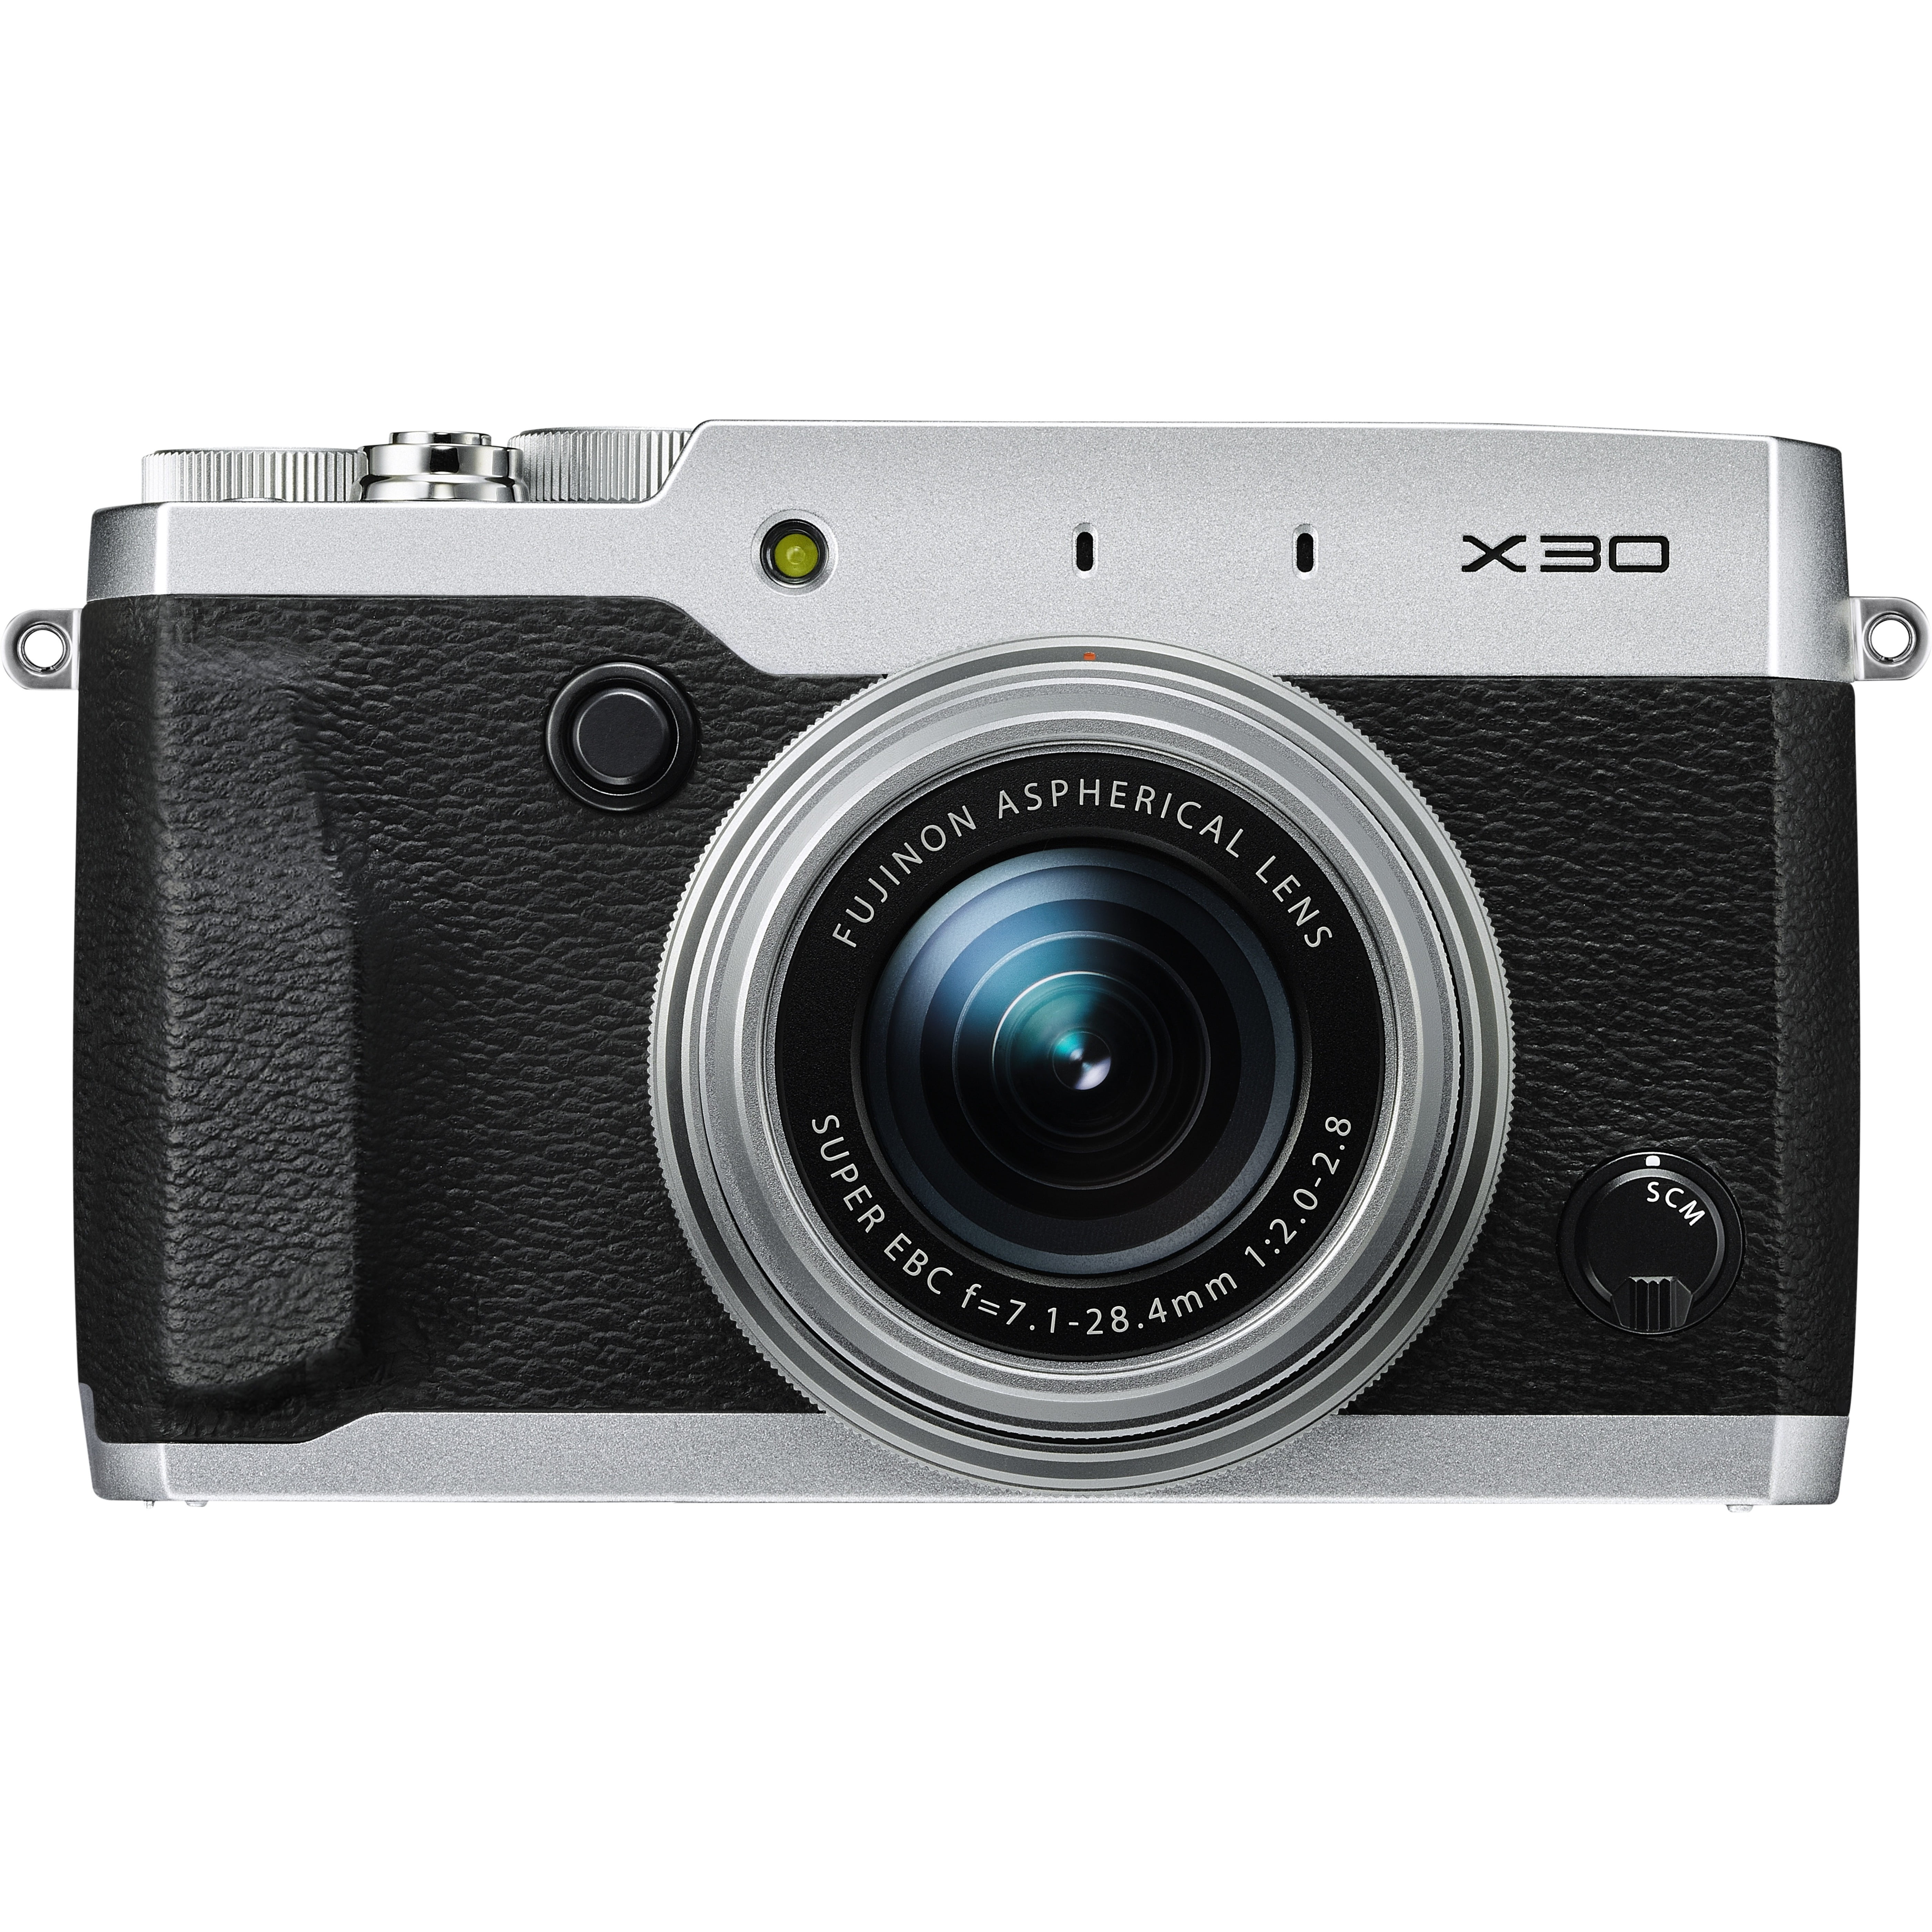 Vervreemden Meenemen buitenspiegel Fujifilm X30 12 Megapixel Compact Camera, Silver - Walmart.com